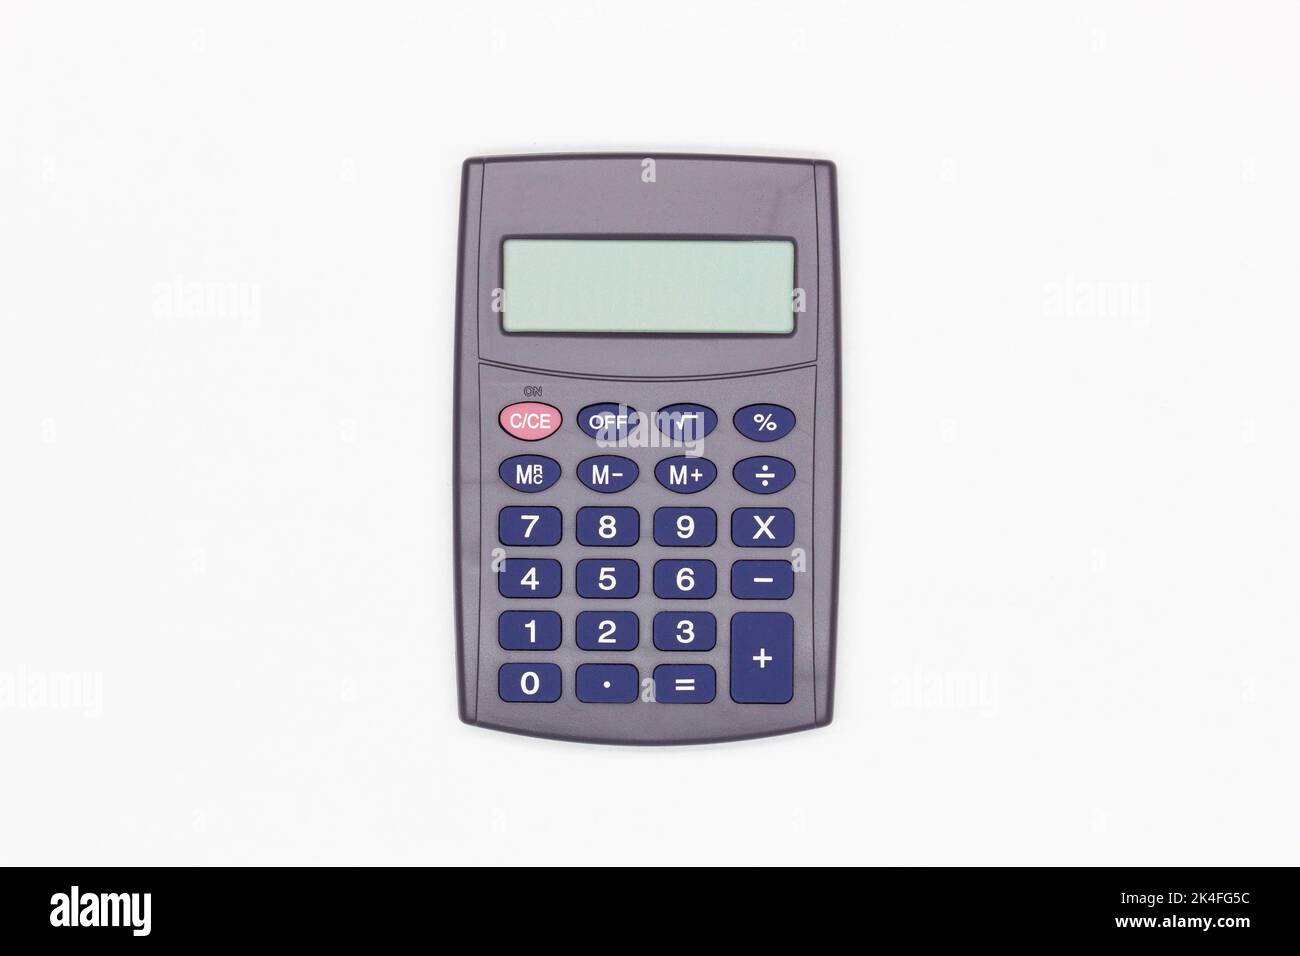 Calculatrice avec de grands boutons bleus avec écran numérique vide sur fond blanc. Isolé. Calculatrice financière solaire. Machine électronique Banque D'Images